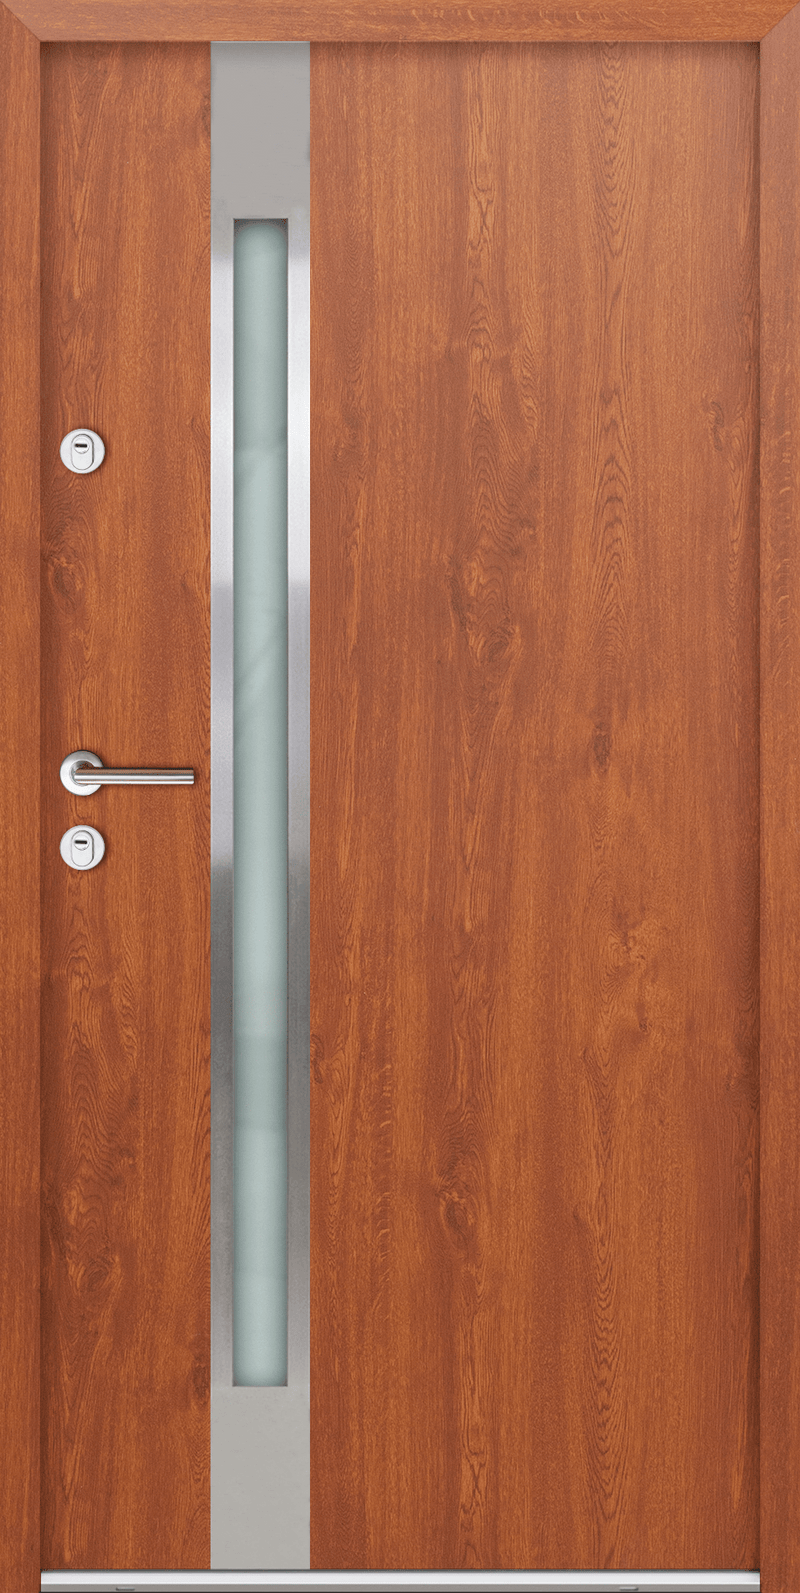 Turenwerke ATU 68 Design 514 Steel Door - Golden Oak